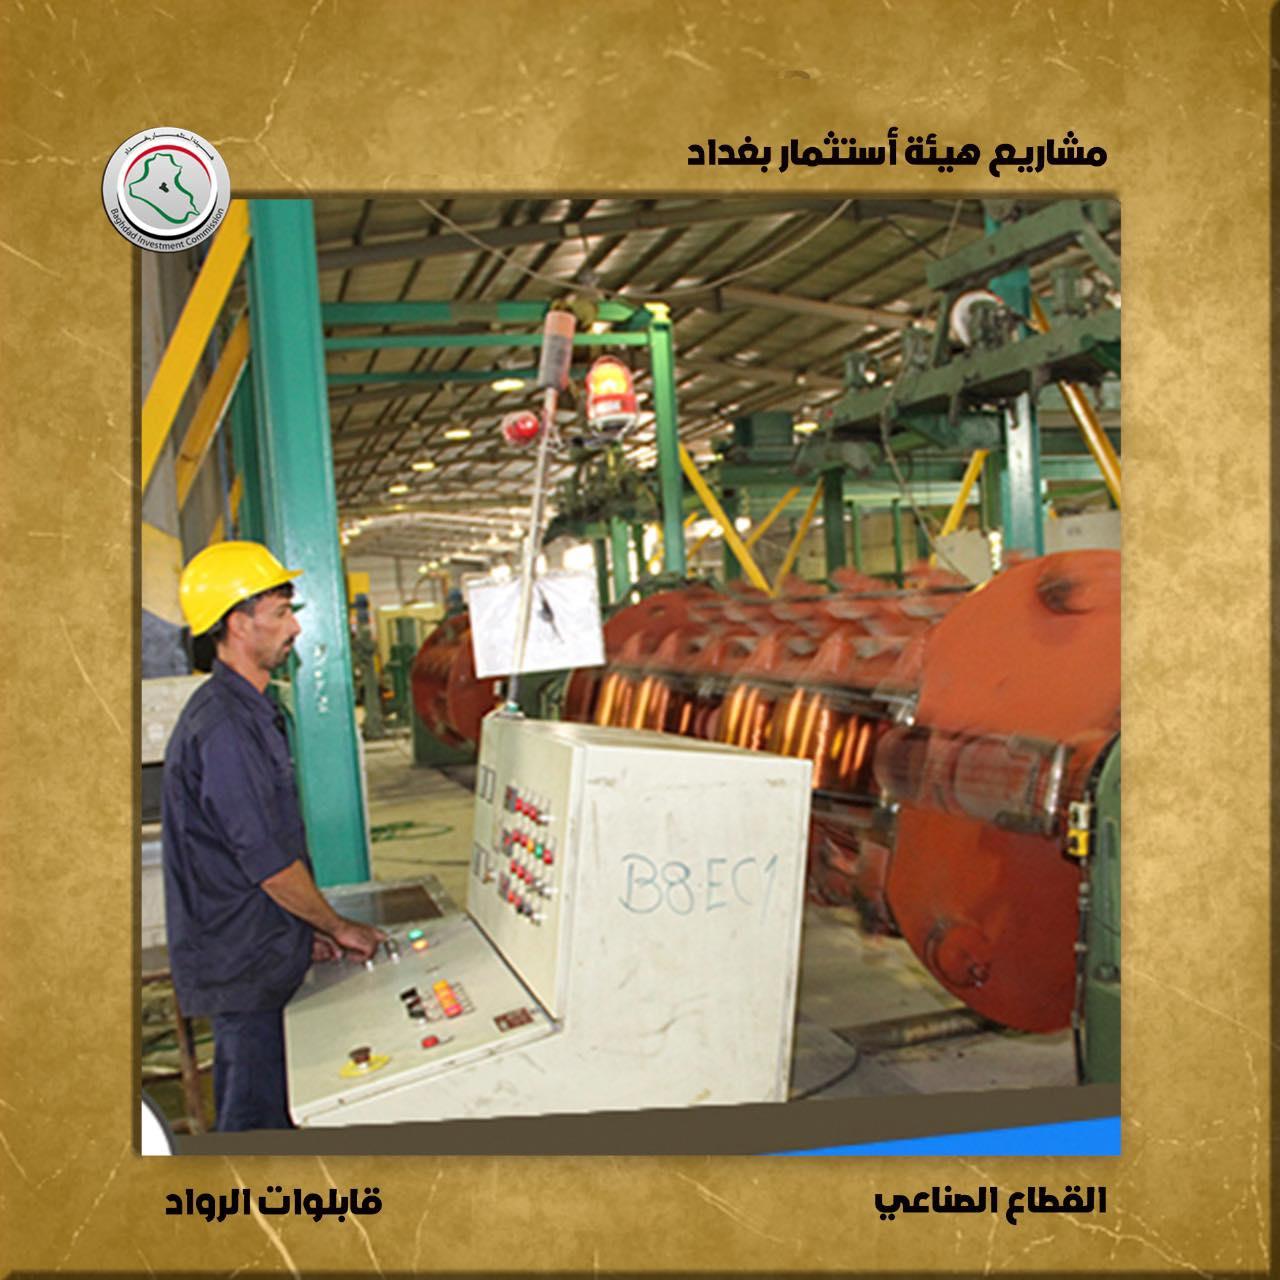 إستثمار بغداد : ( ٤٤ ) مشروع إستثماري متميز ينعش القطاع الصناعي ويسير به نحو تحقيق التنمية المستدامة